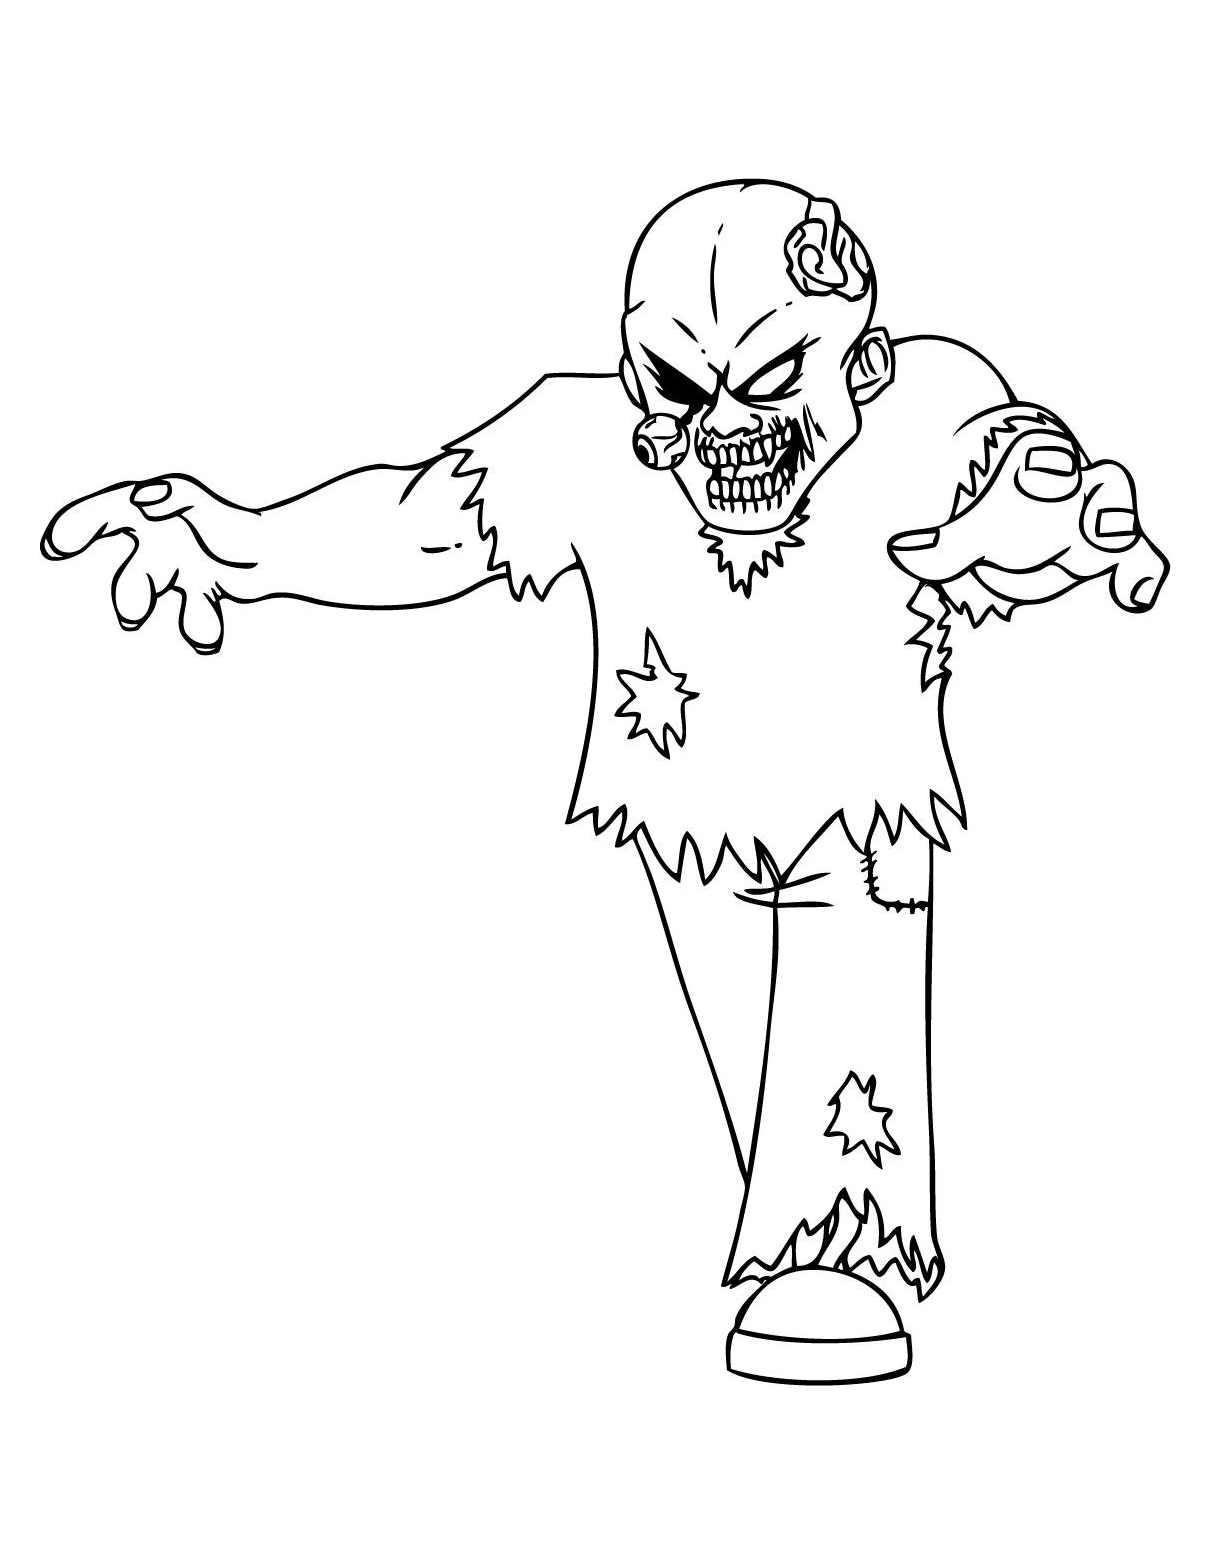 Image de zombie à colorier, facile pour enfants